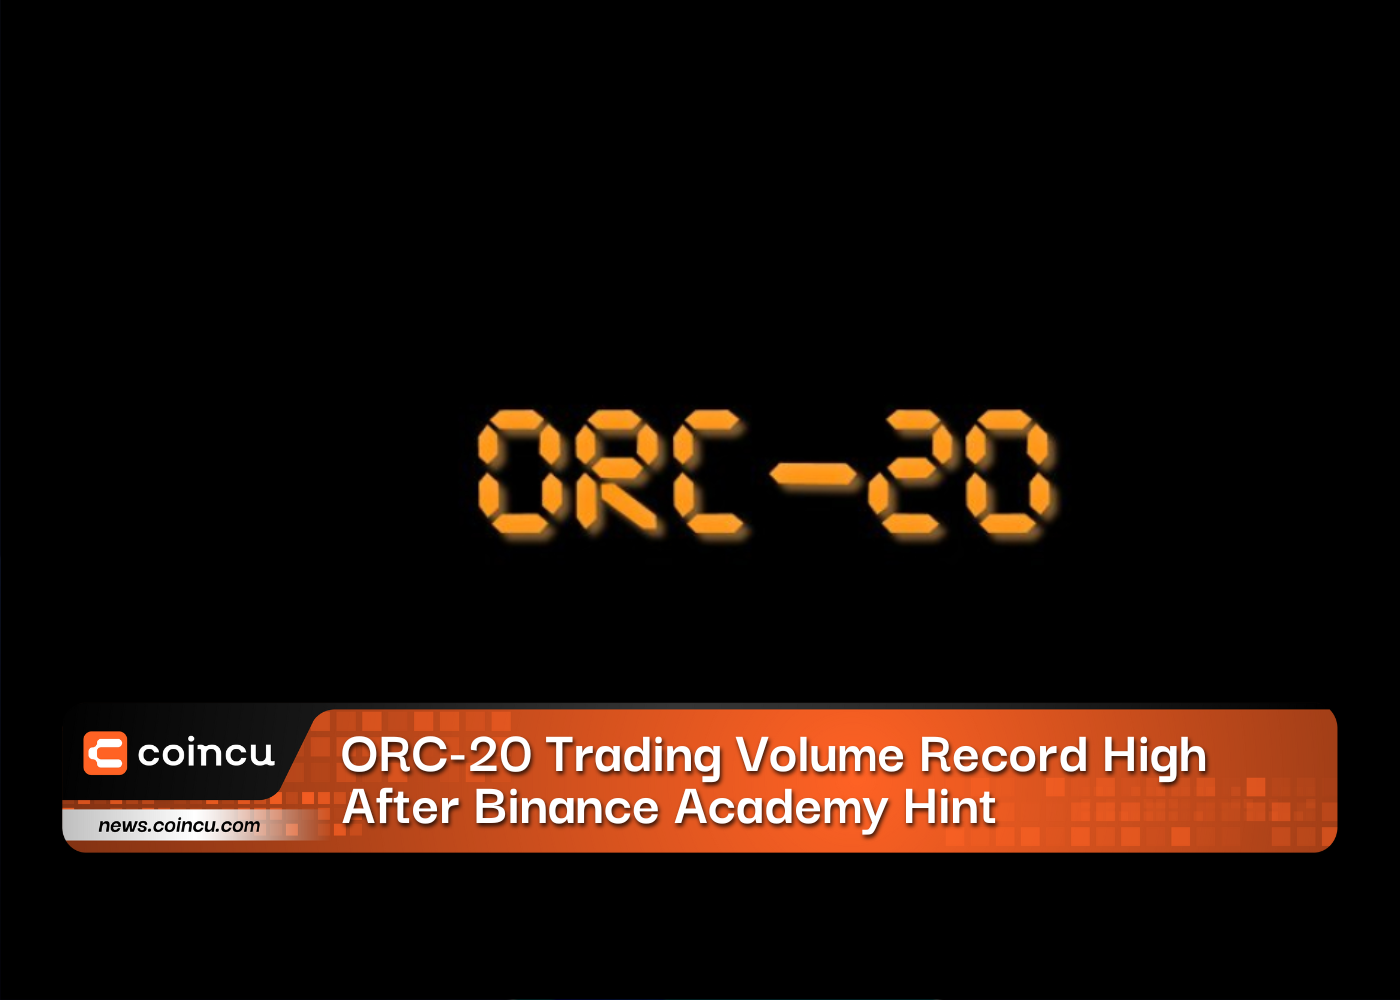 바이낸스 아카데미 힌트 이후 ORC-20 거래량 최고 기록